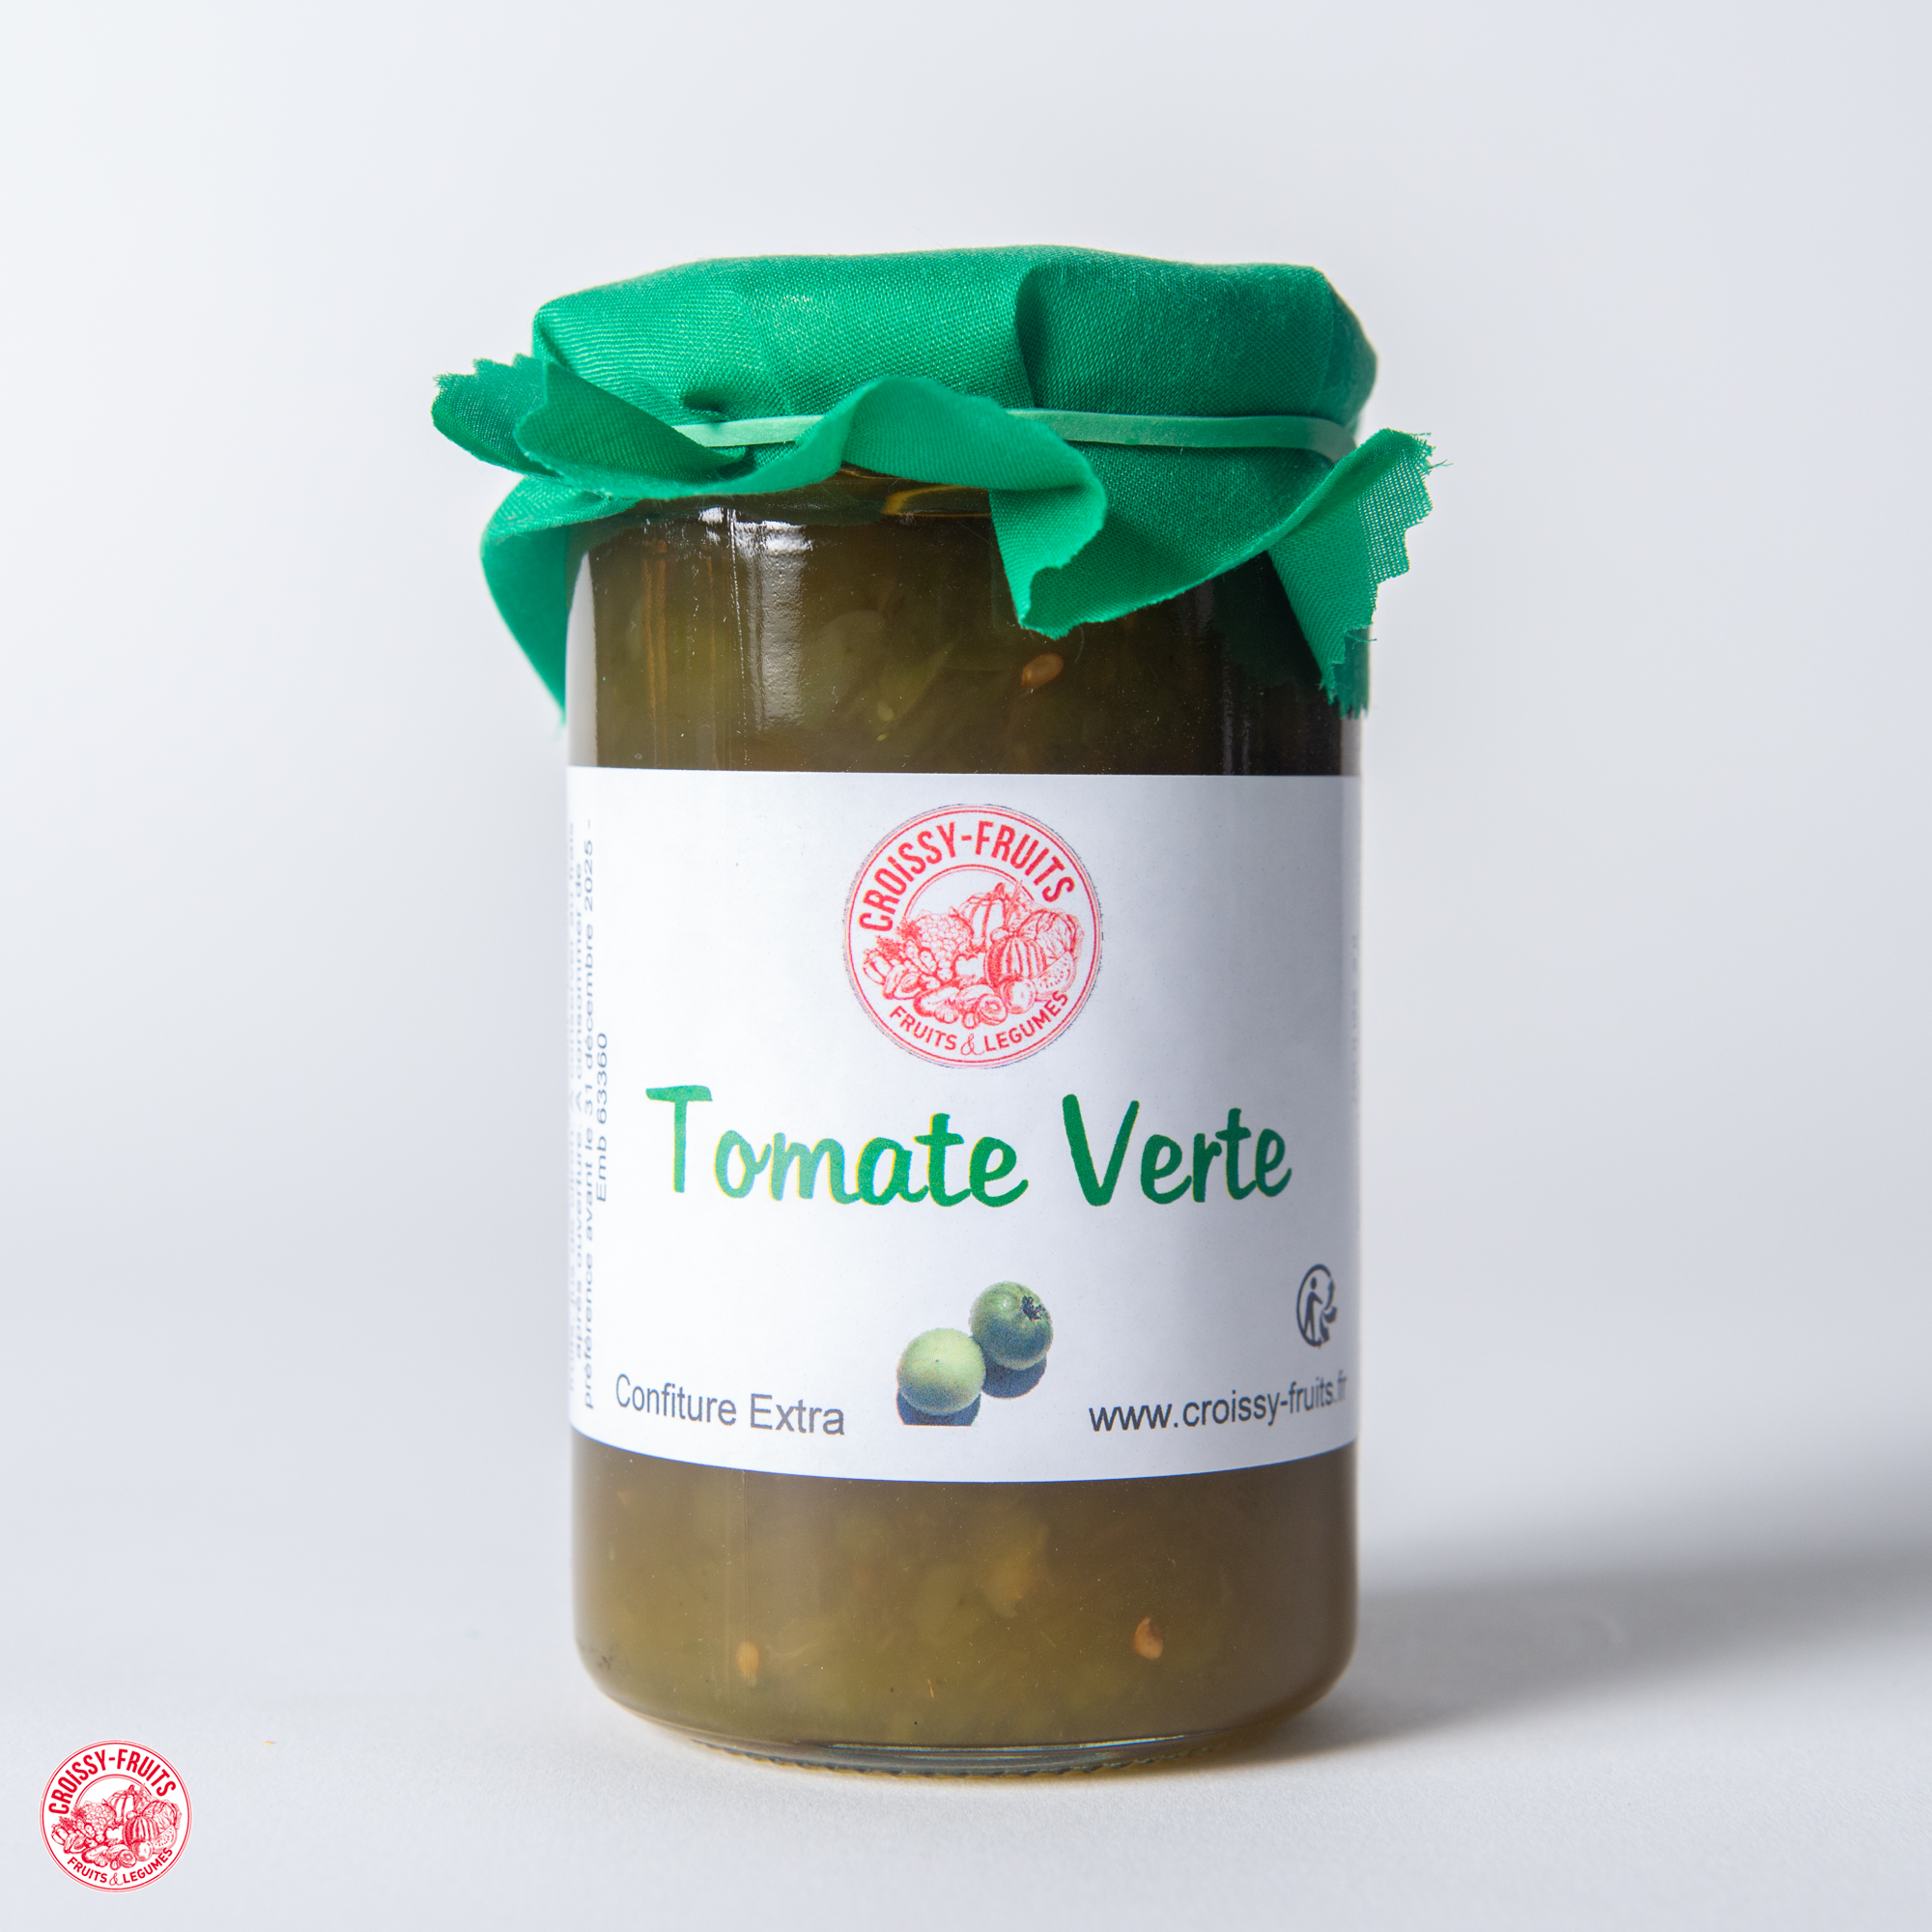 Confiture de tomates vertes (370g)